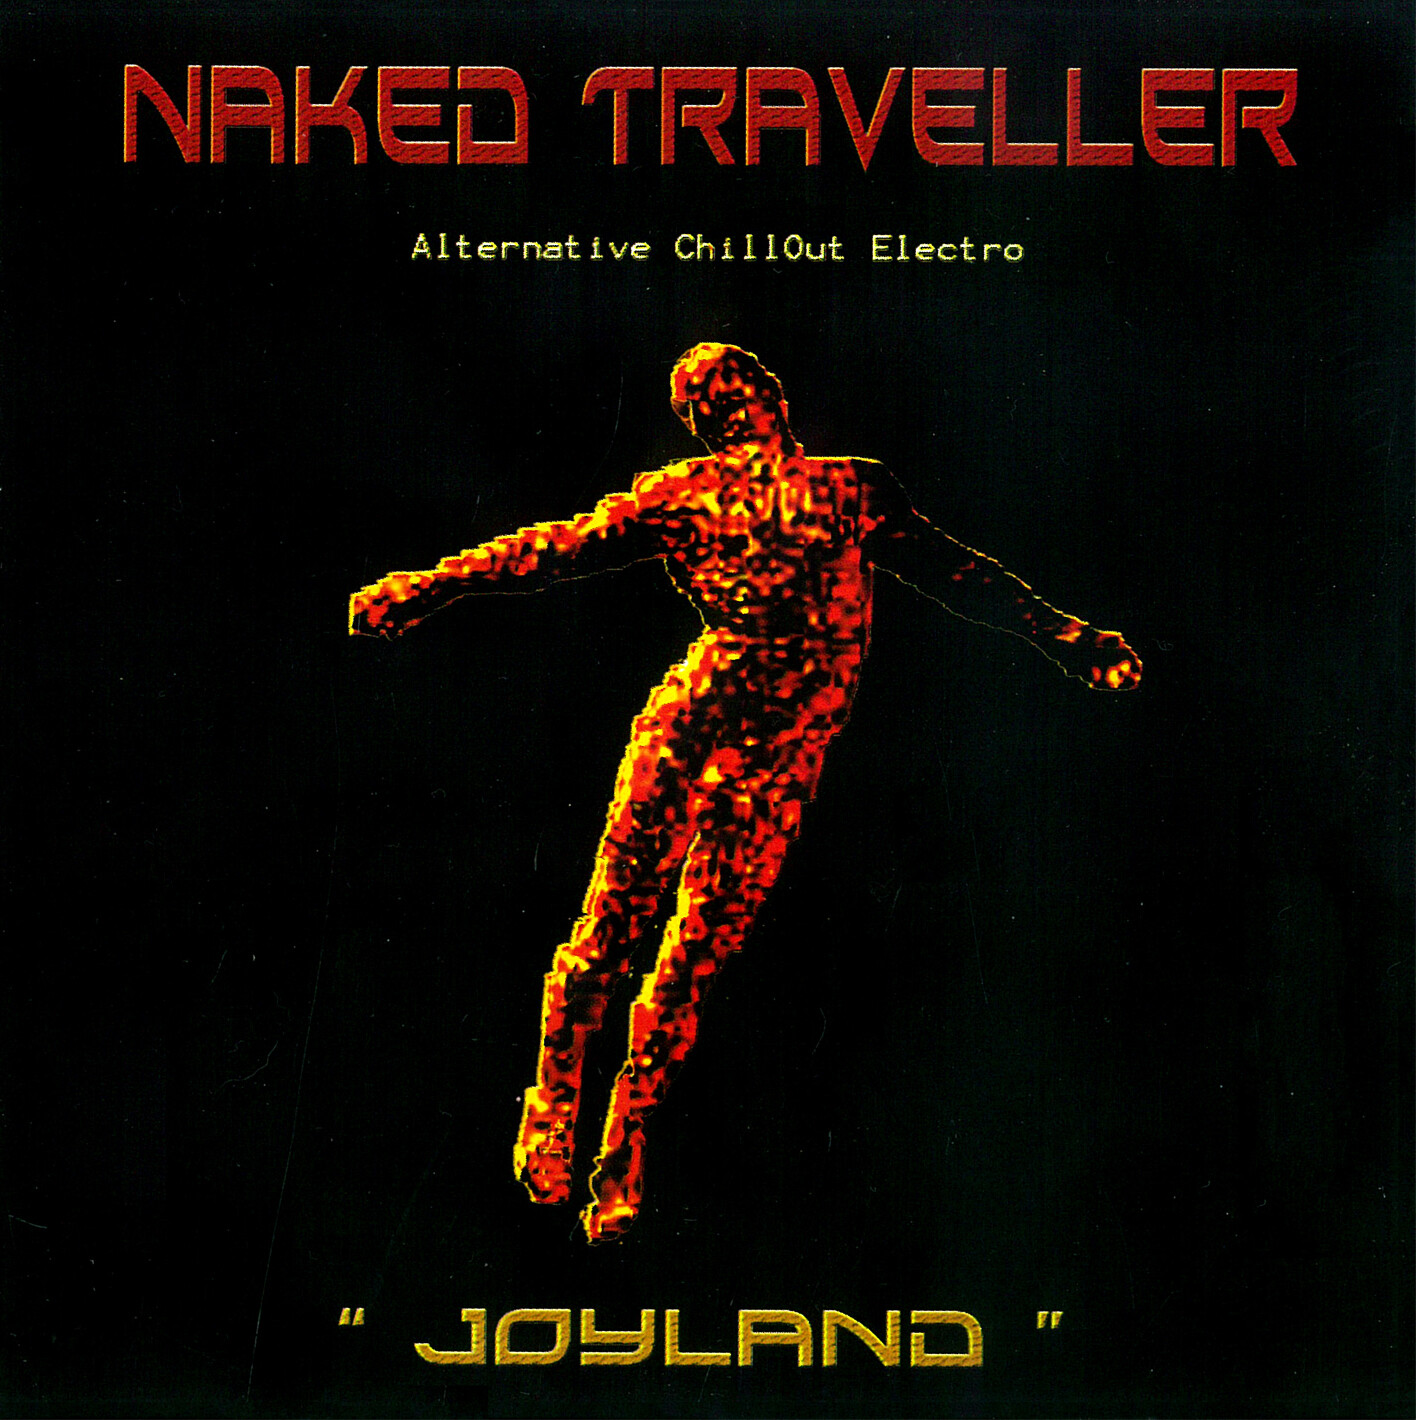 Naked Traveller - " Joyland "